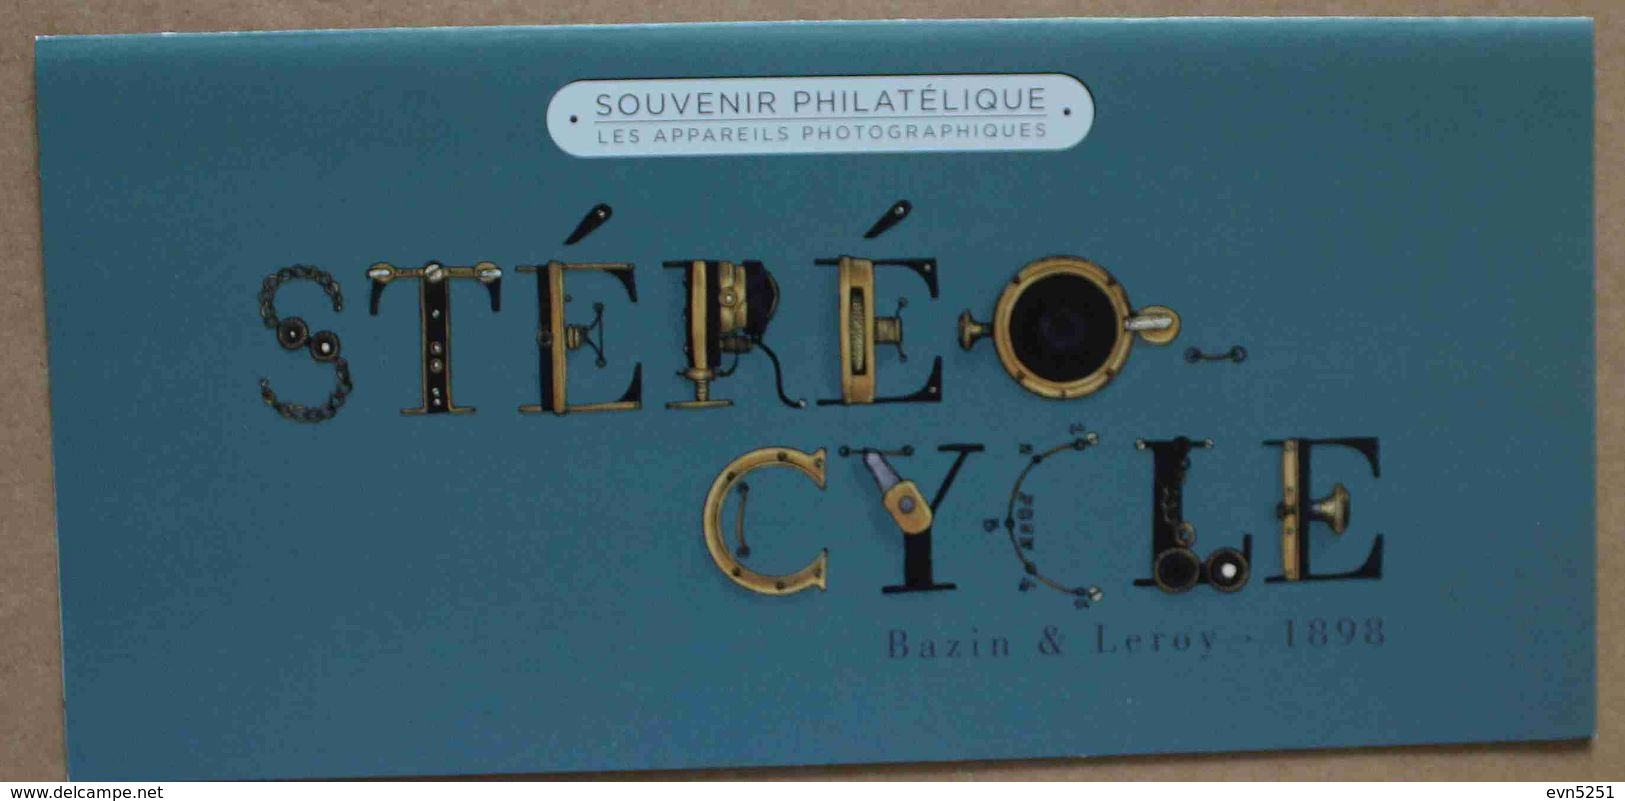 BS14-104 : Bloc Souvenir / Les Appareils Photographiques - Stéréocycle, 1898 - Foglietti Commemorativi